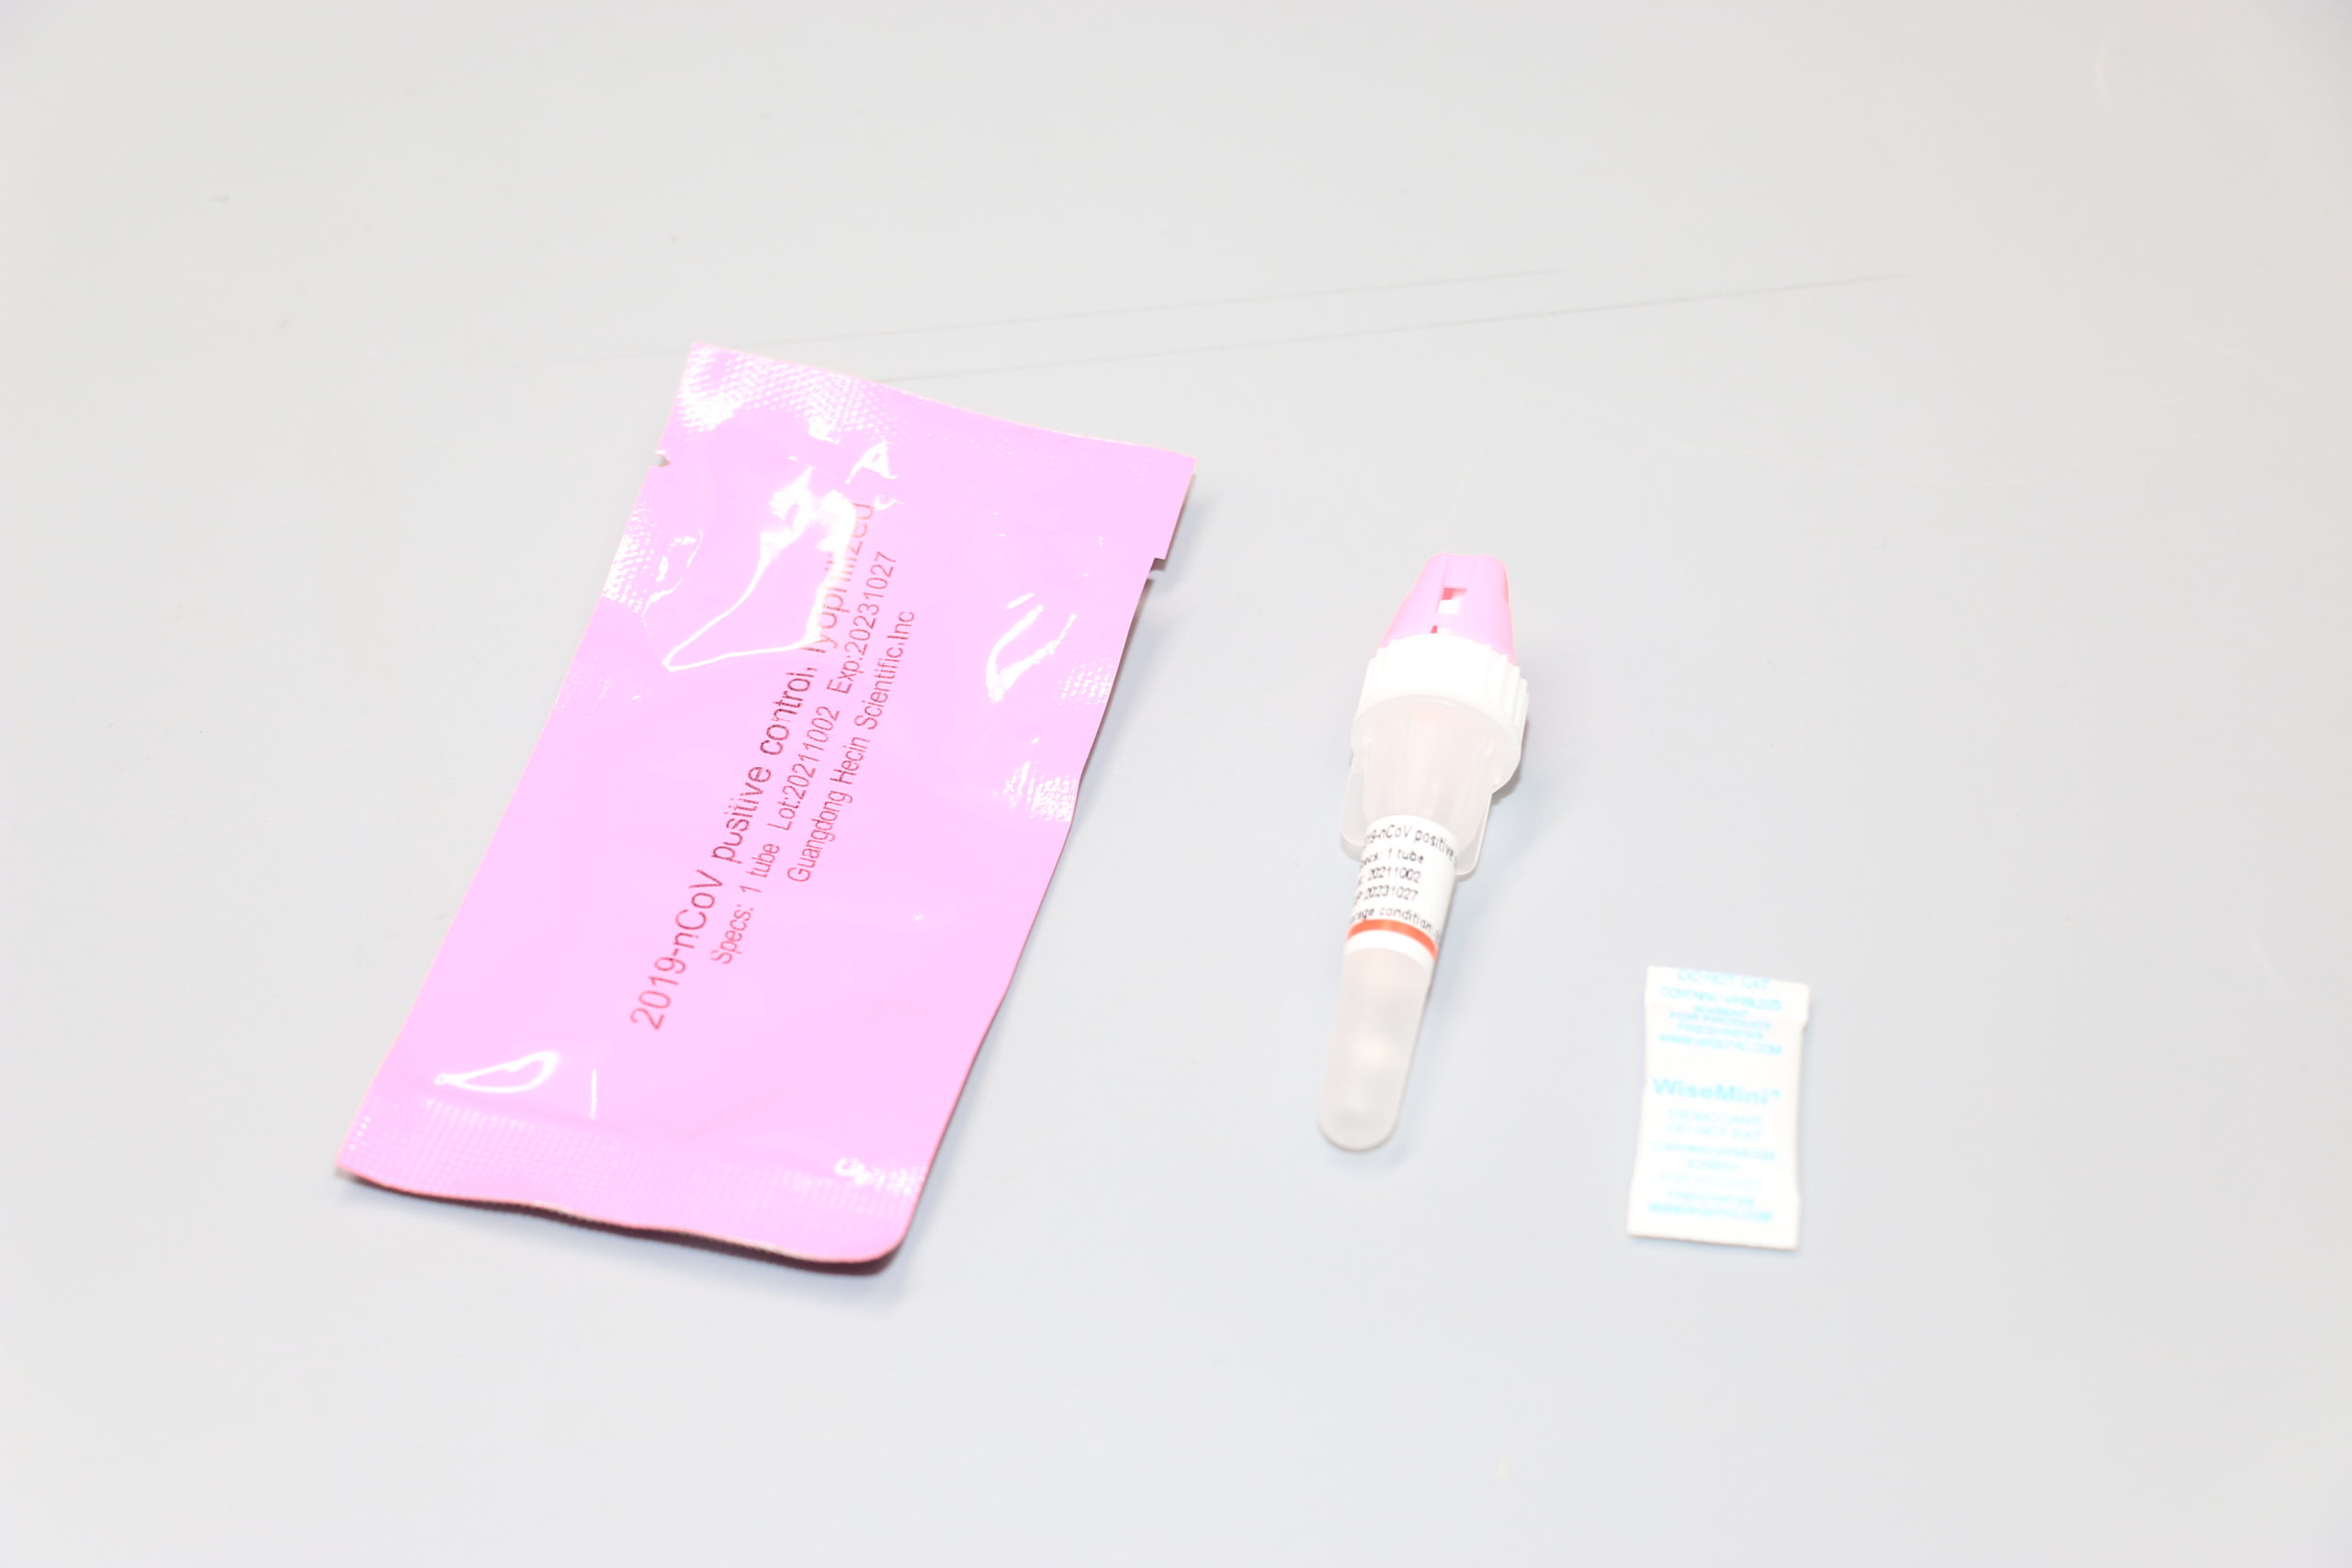 covid 19 antigen rapid test kit